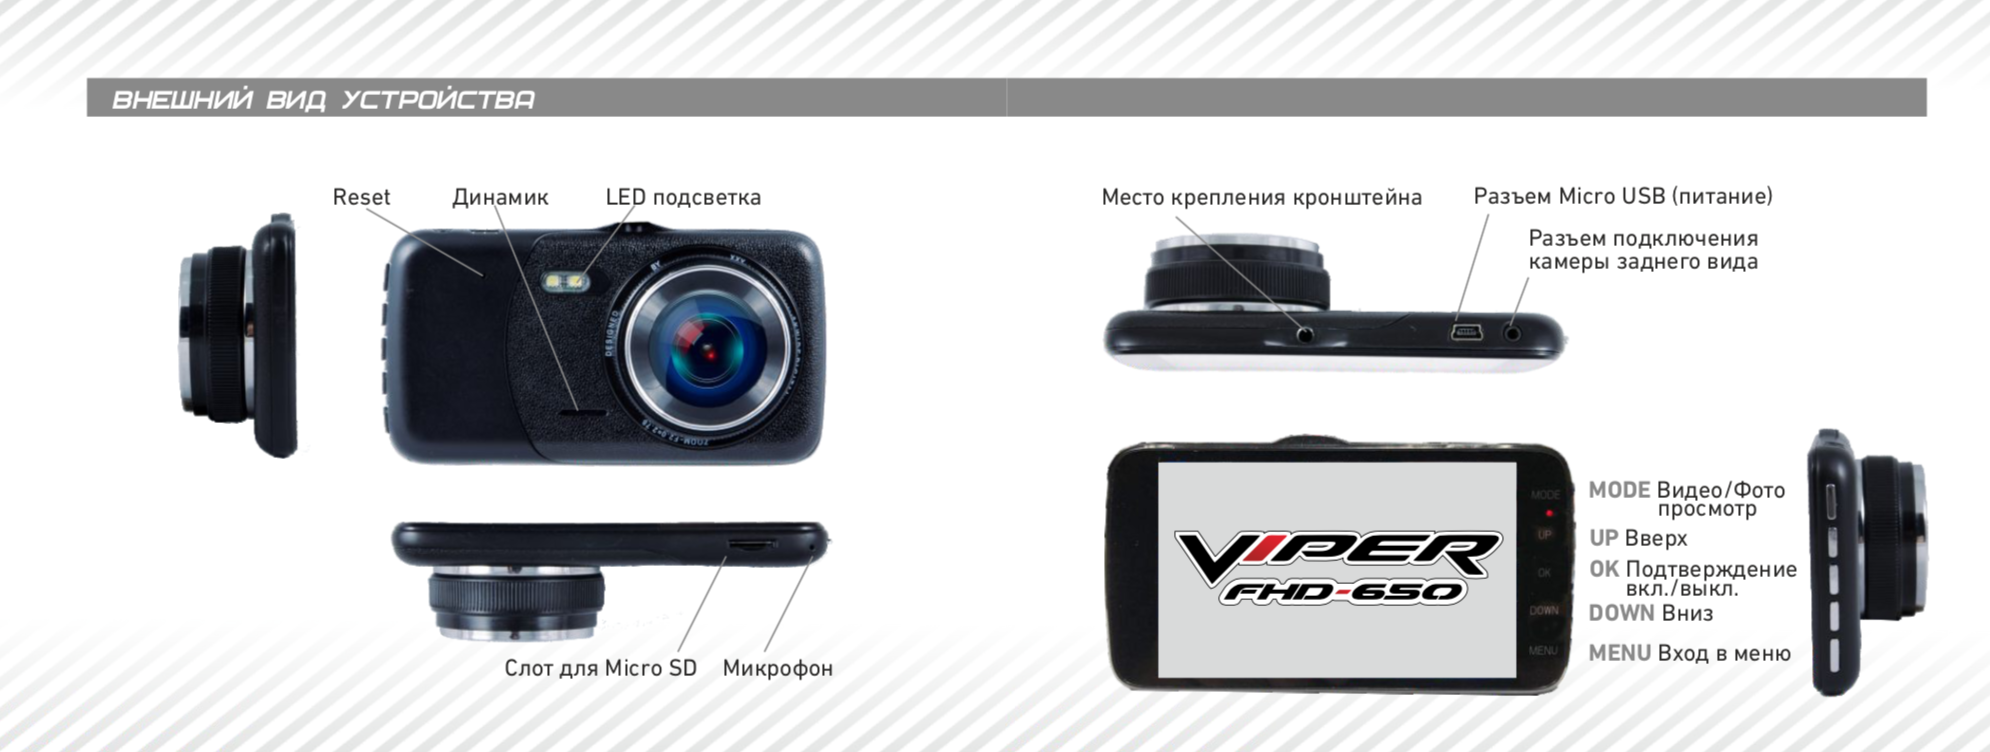 Регистратор значение. Видеорегистратор Viper FHD-650. Автомобильный видеорегистратор Viper FHD 650 2 камеры (внутренняя). Автомобильный видеорегистратор Viper z1 Sky.